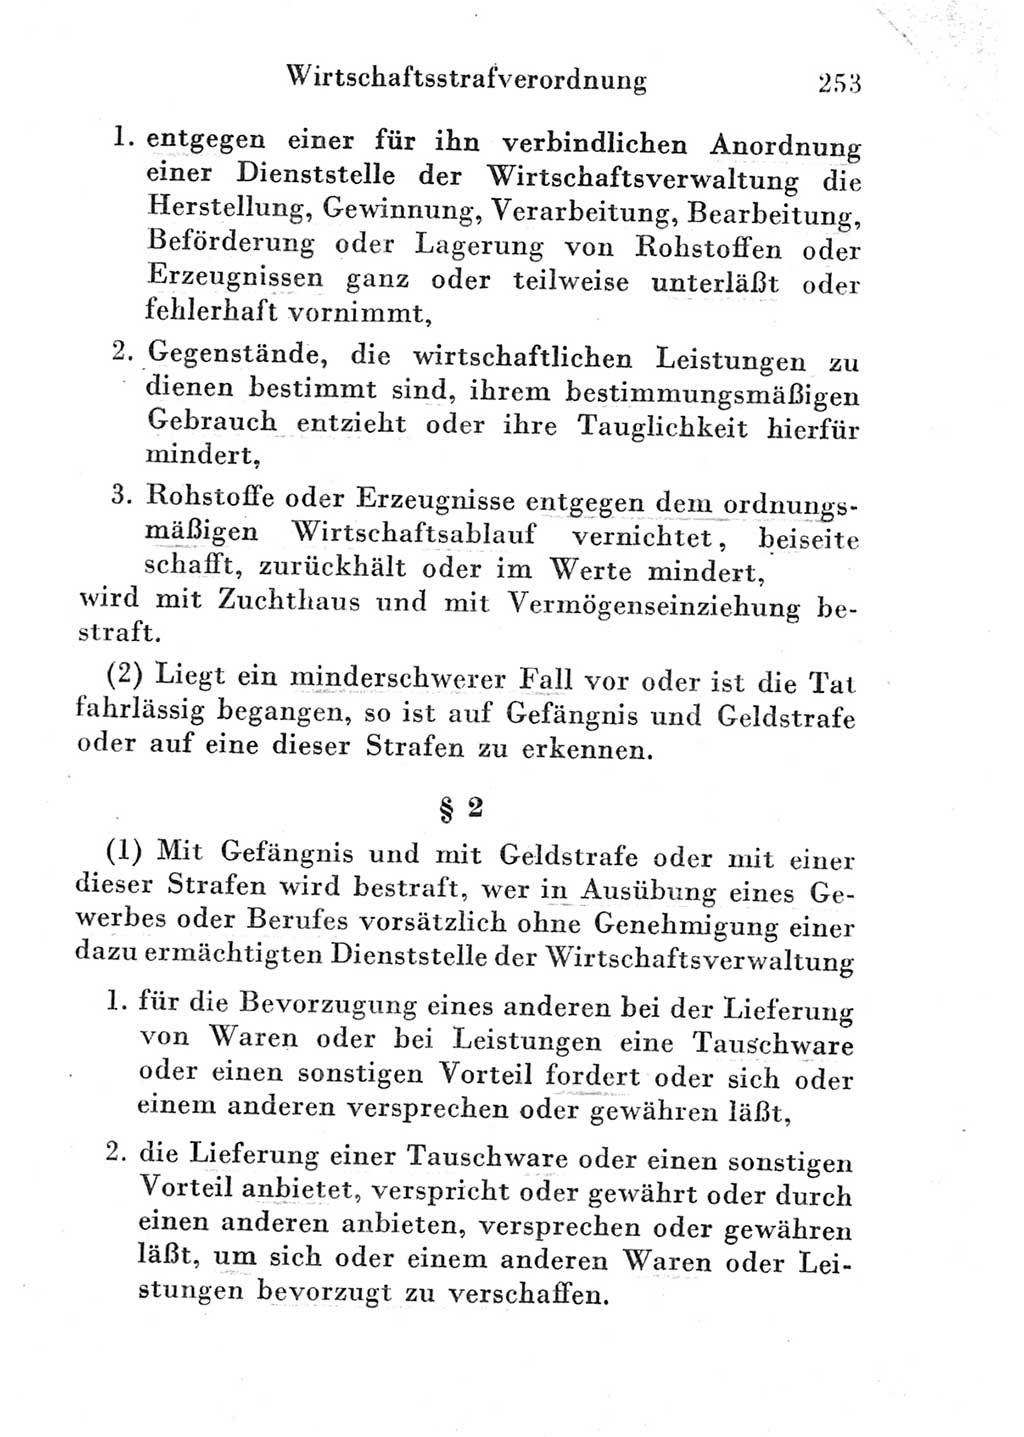 Strafgesetzbuch (StGB) und andere Strafgesetze [Deutsche Demokratische Republik (DDR)] 1951, Seite 253 (StGB Strafges. DDR 1951, S. 253)